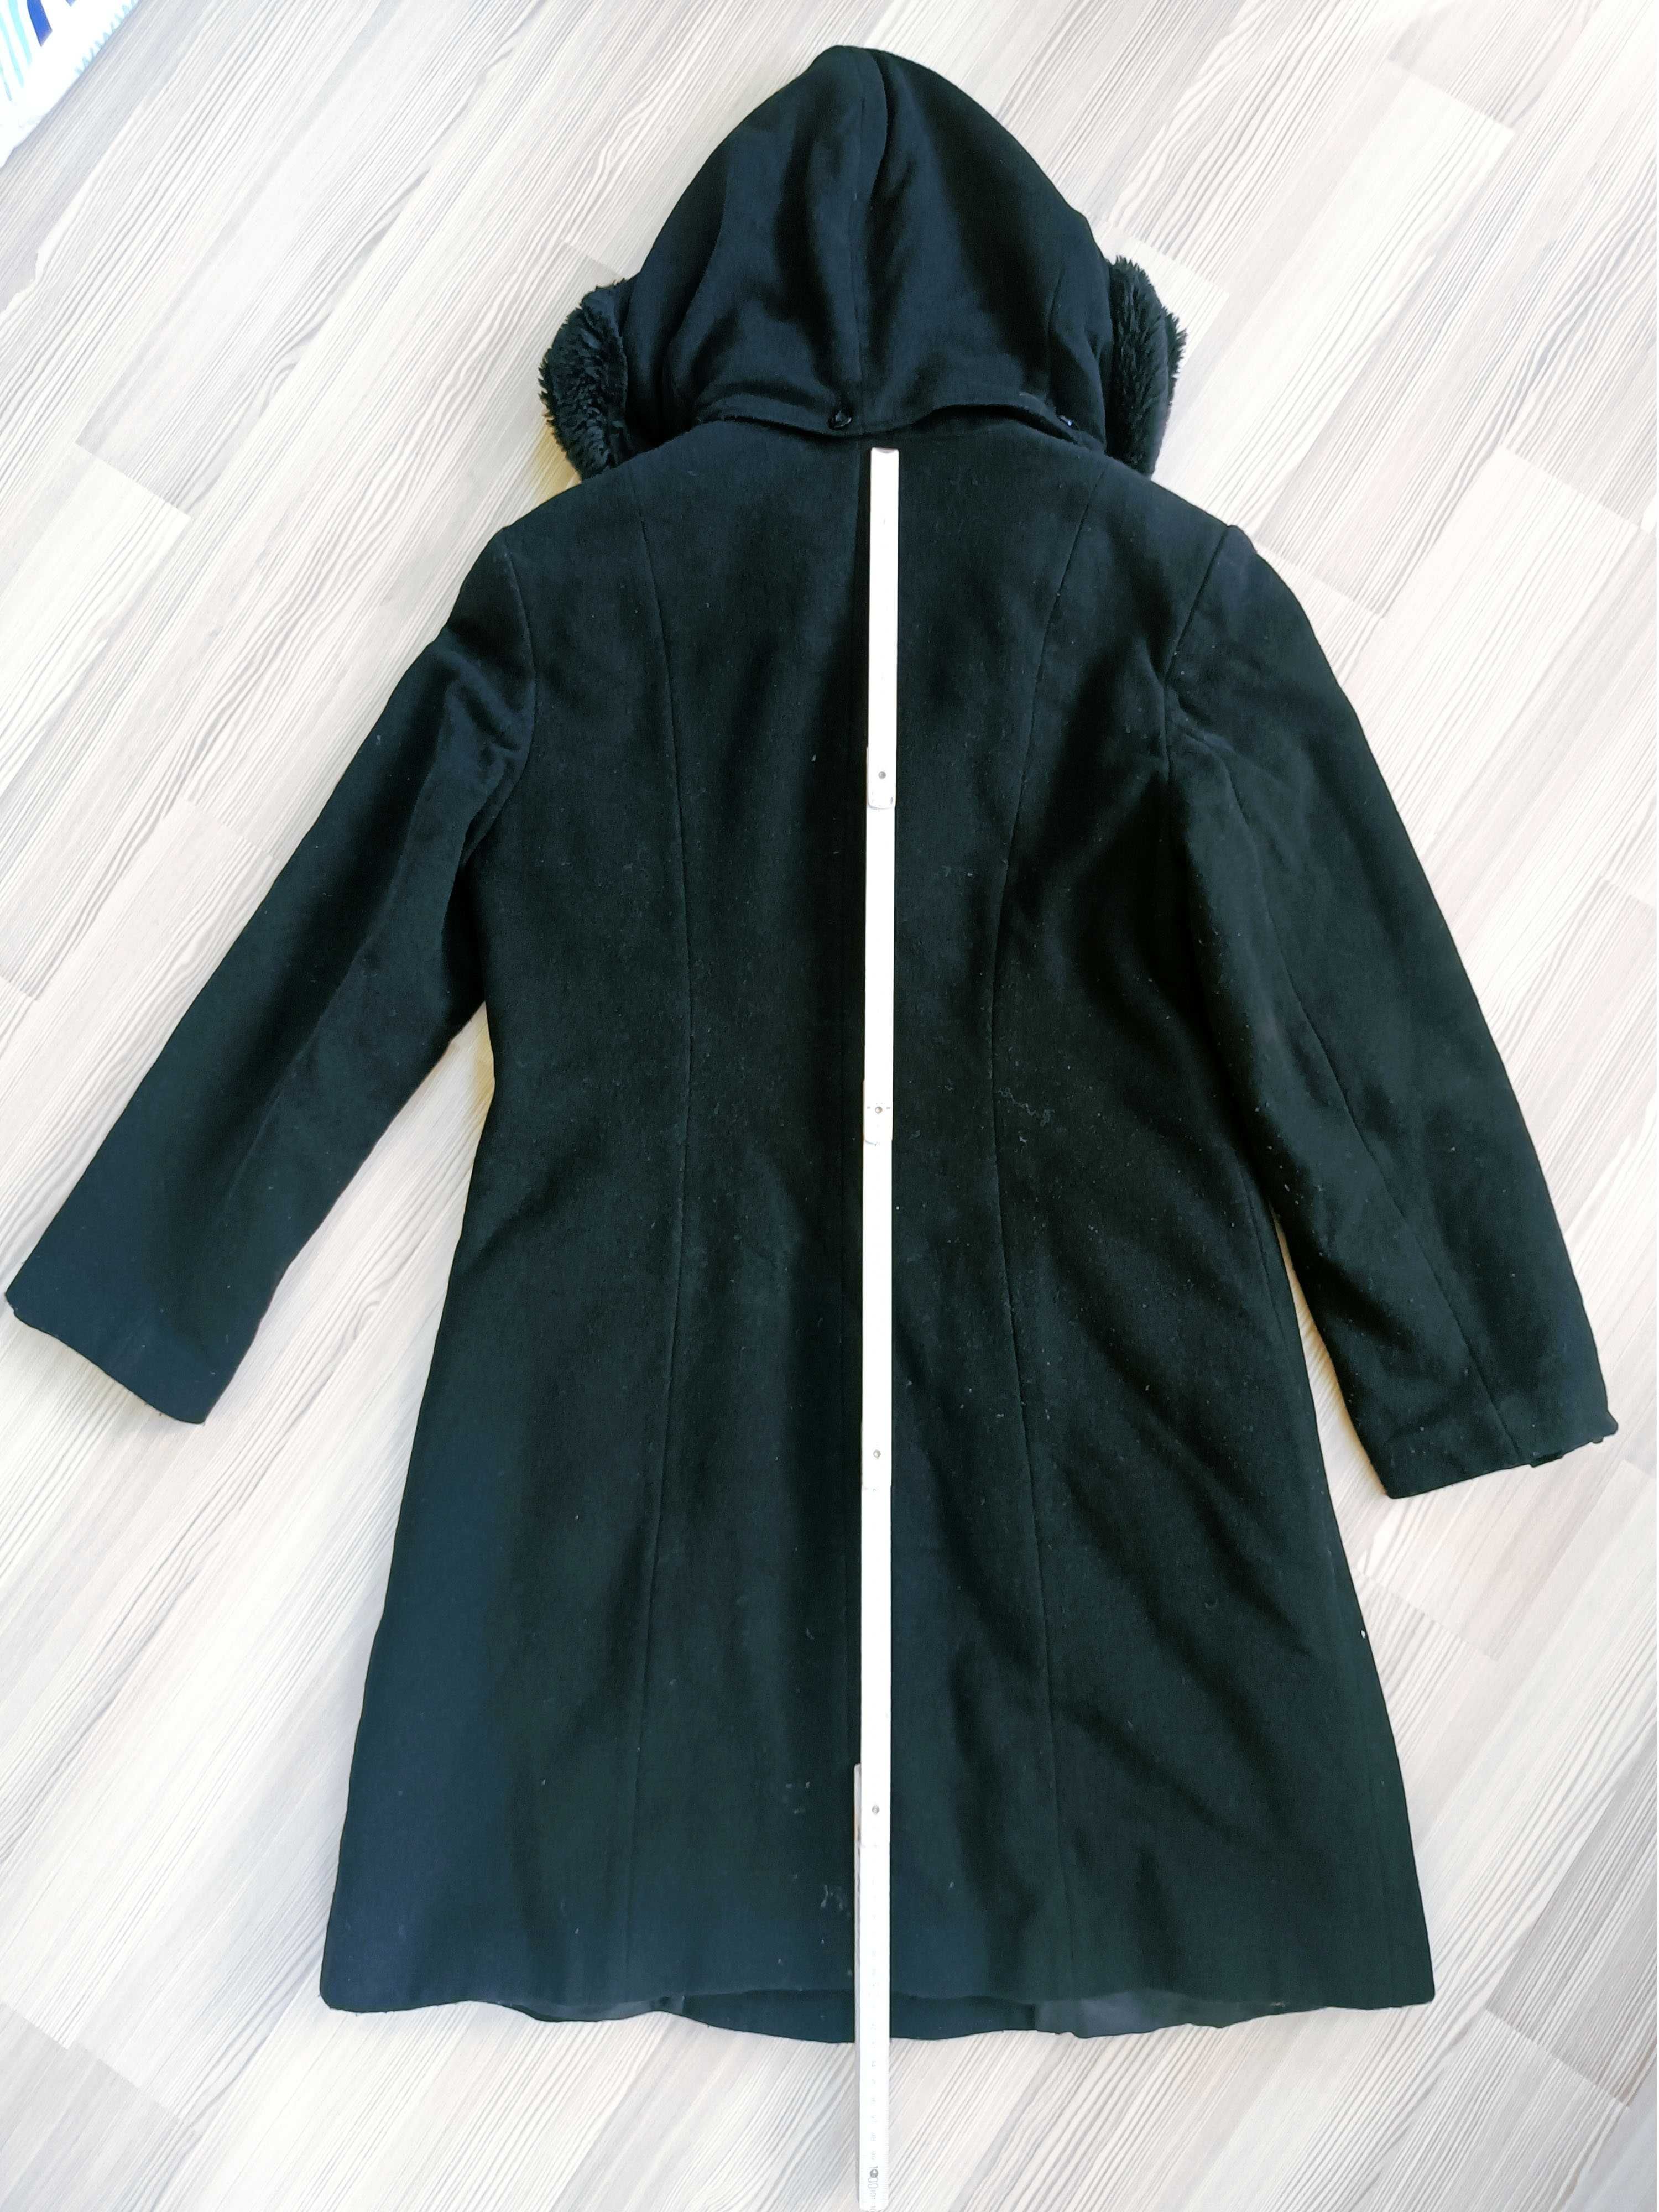 Płaszcz z kapturem Bellandi damski czarny rozmiar M